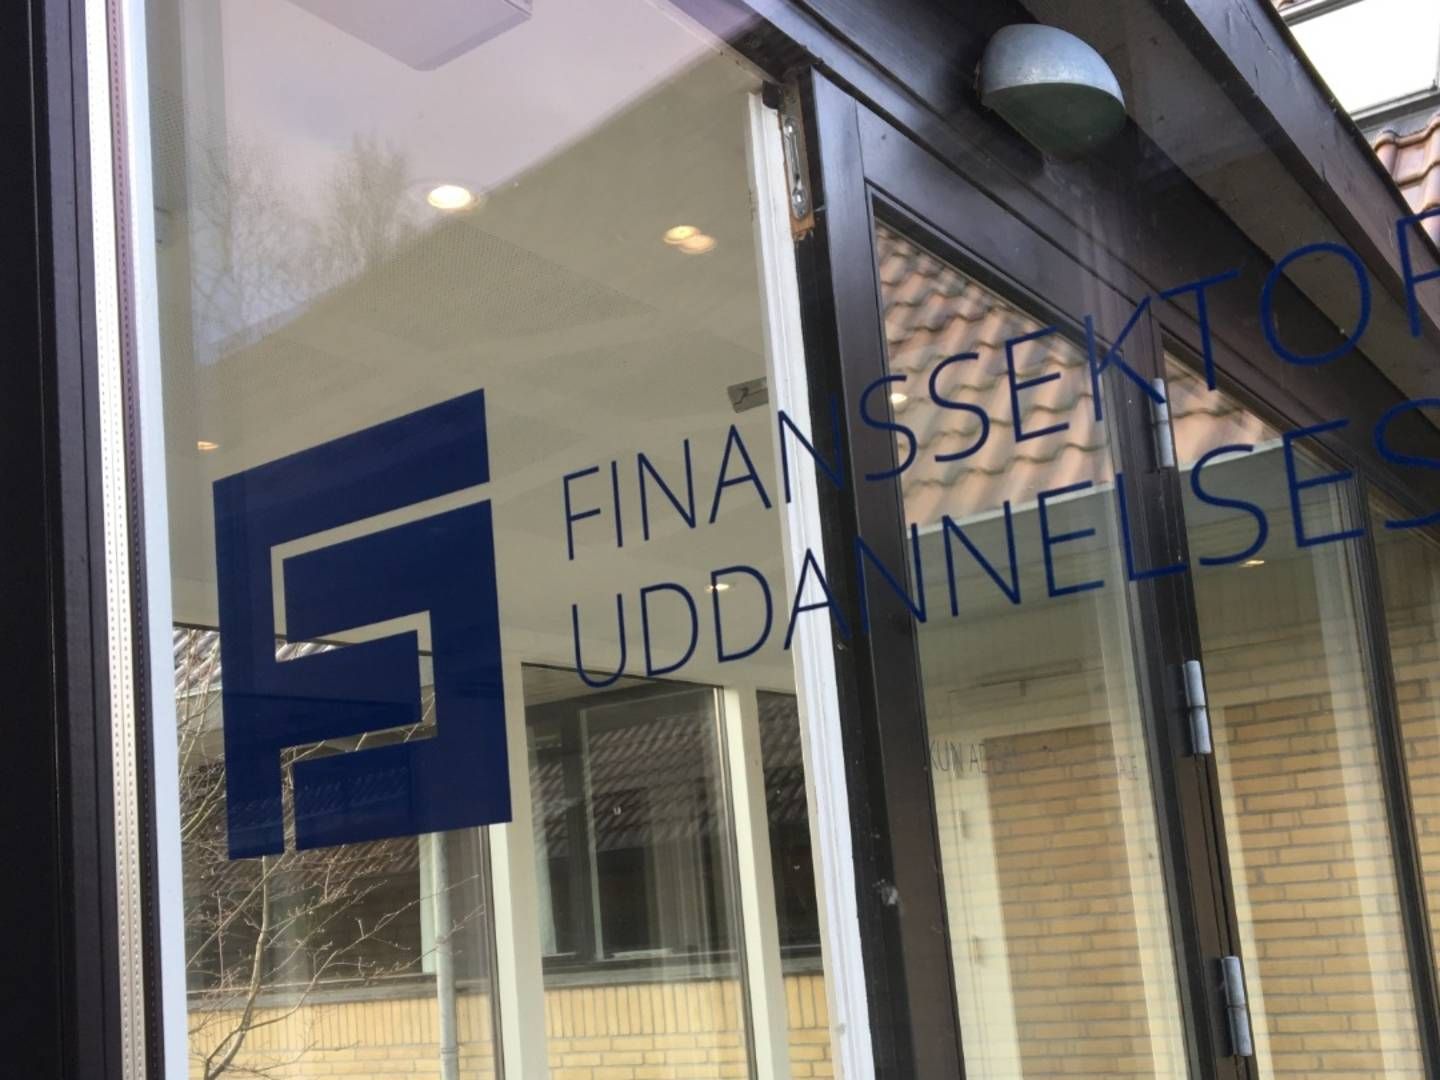 Finanssektorens Uddannelsescenter uddanner en lang række af medarbejderne i den danske finansverden. | Foto: PR